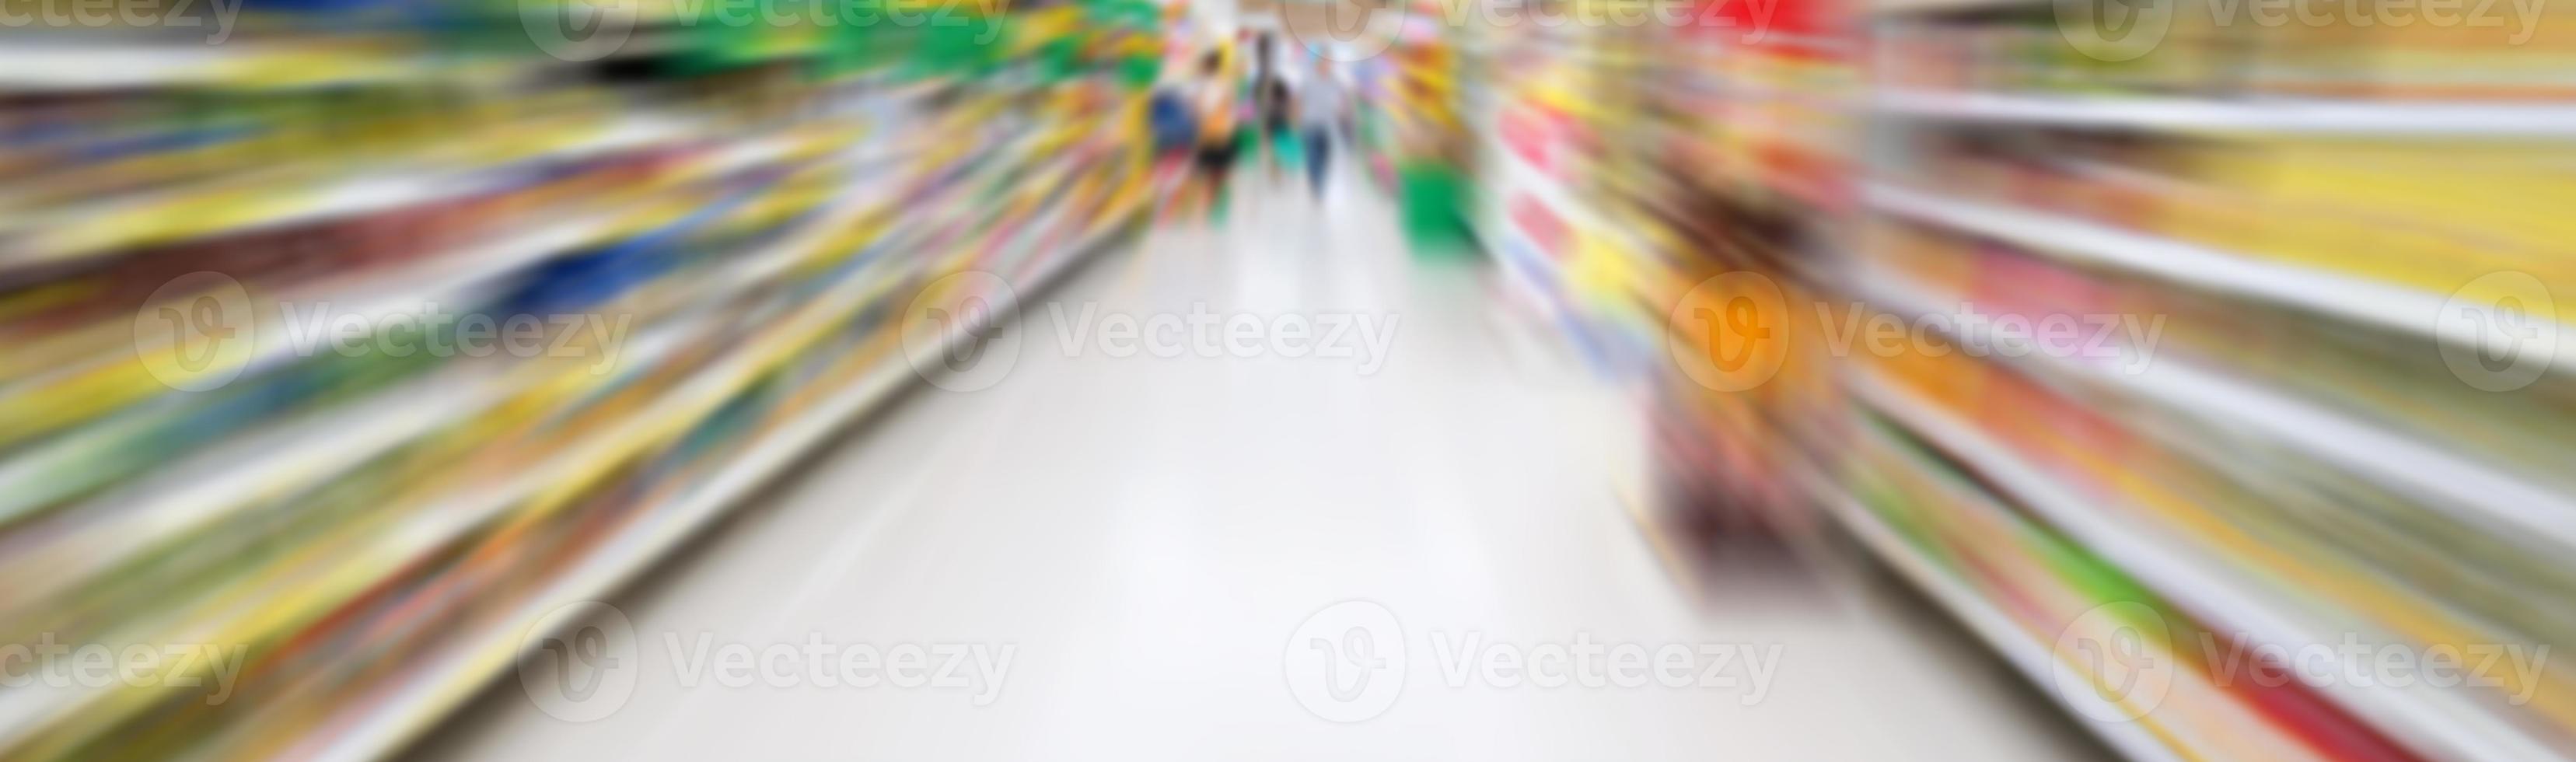 corridoio del supermercato con sfocatura del movimento foto